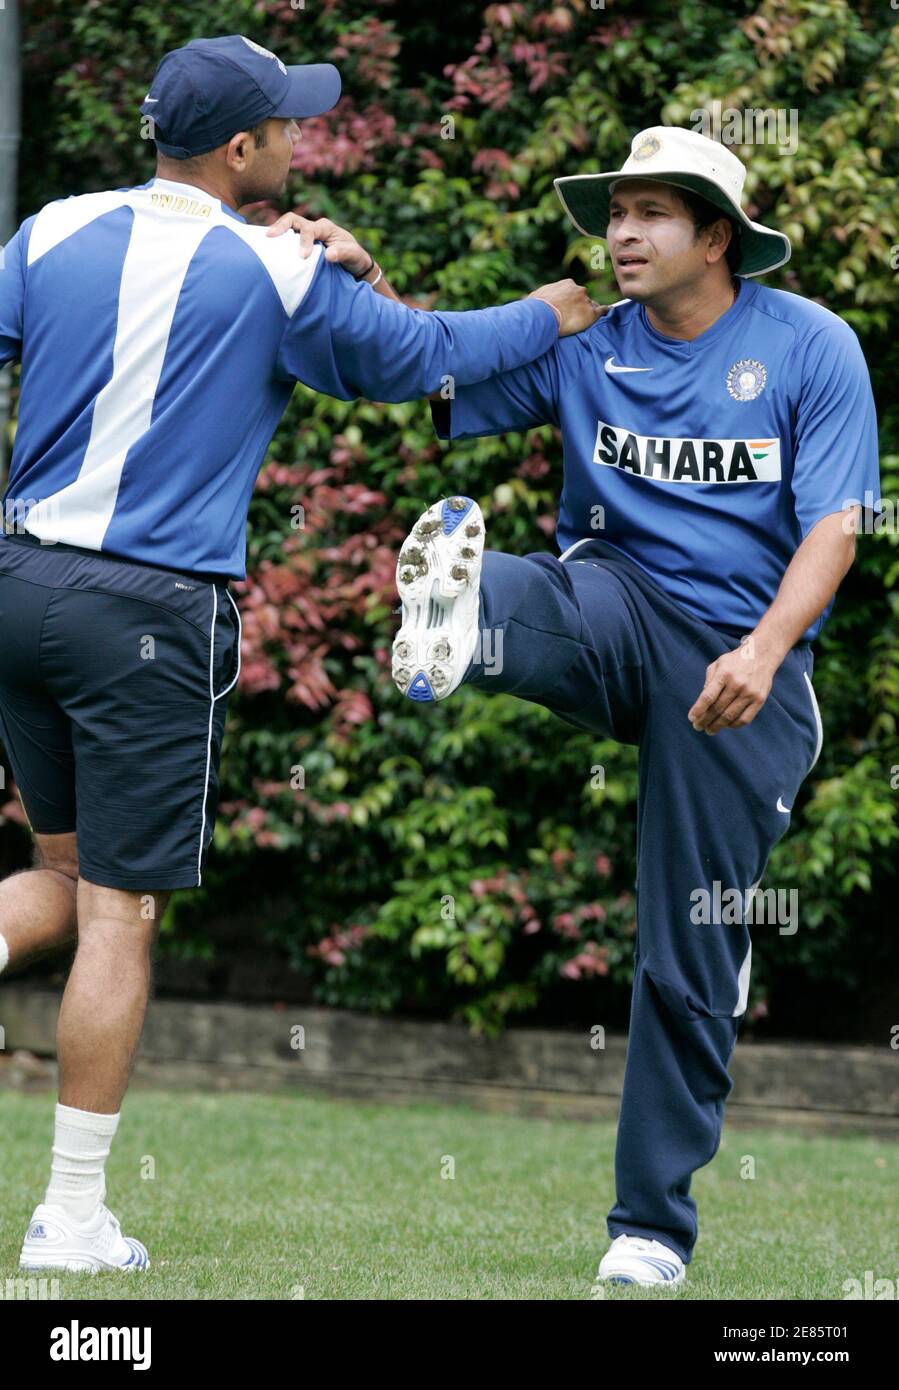 Sachin Tendulkar (R) s'étire avec son coéquipier Virender Sehwag lors d'une session d'entraînement à Sydney le 22 février 2008, avant leur match international de cricket d'une journée de trois séries contre l'Australie. REUTERS/will Burgess (AUSTRALIE) Banque D'Images